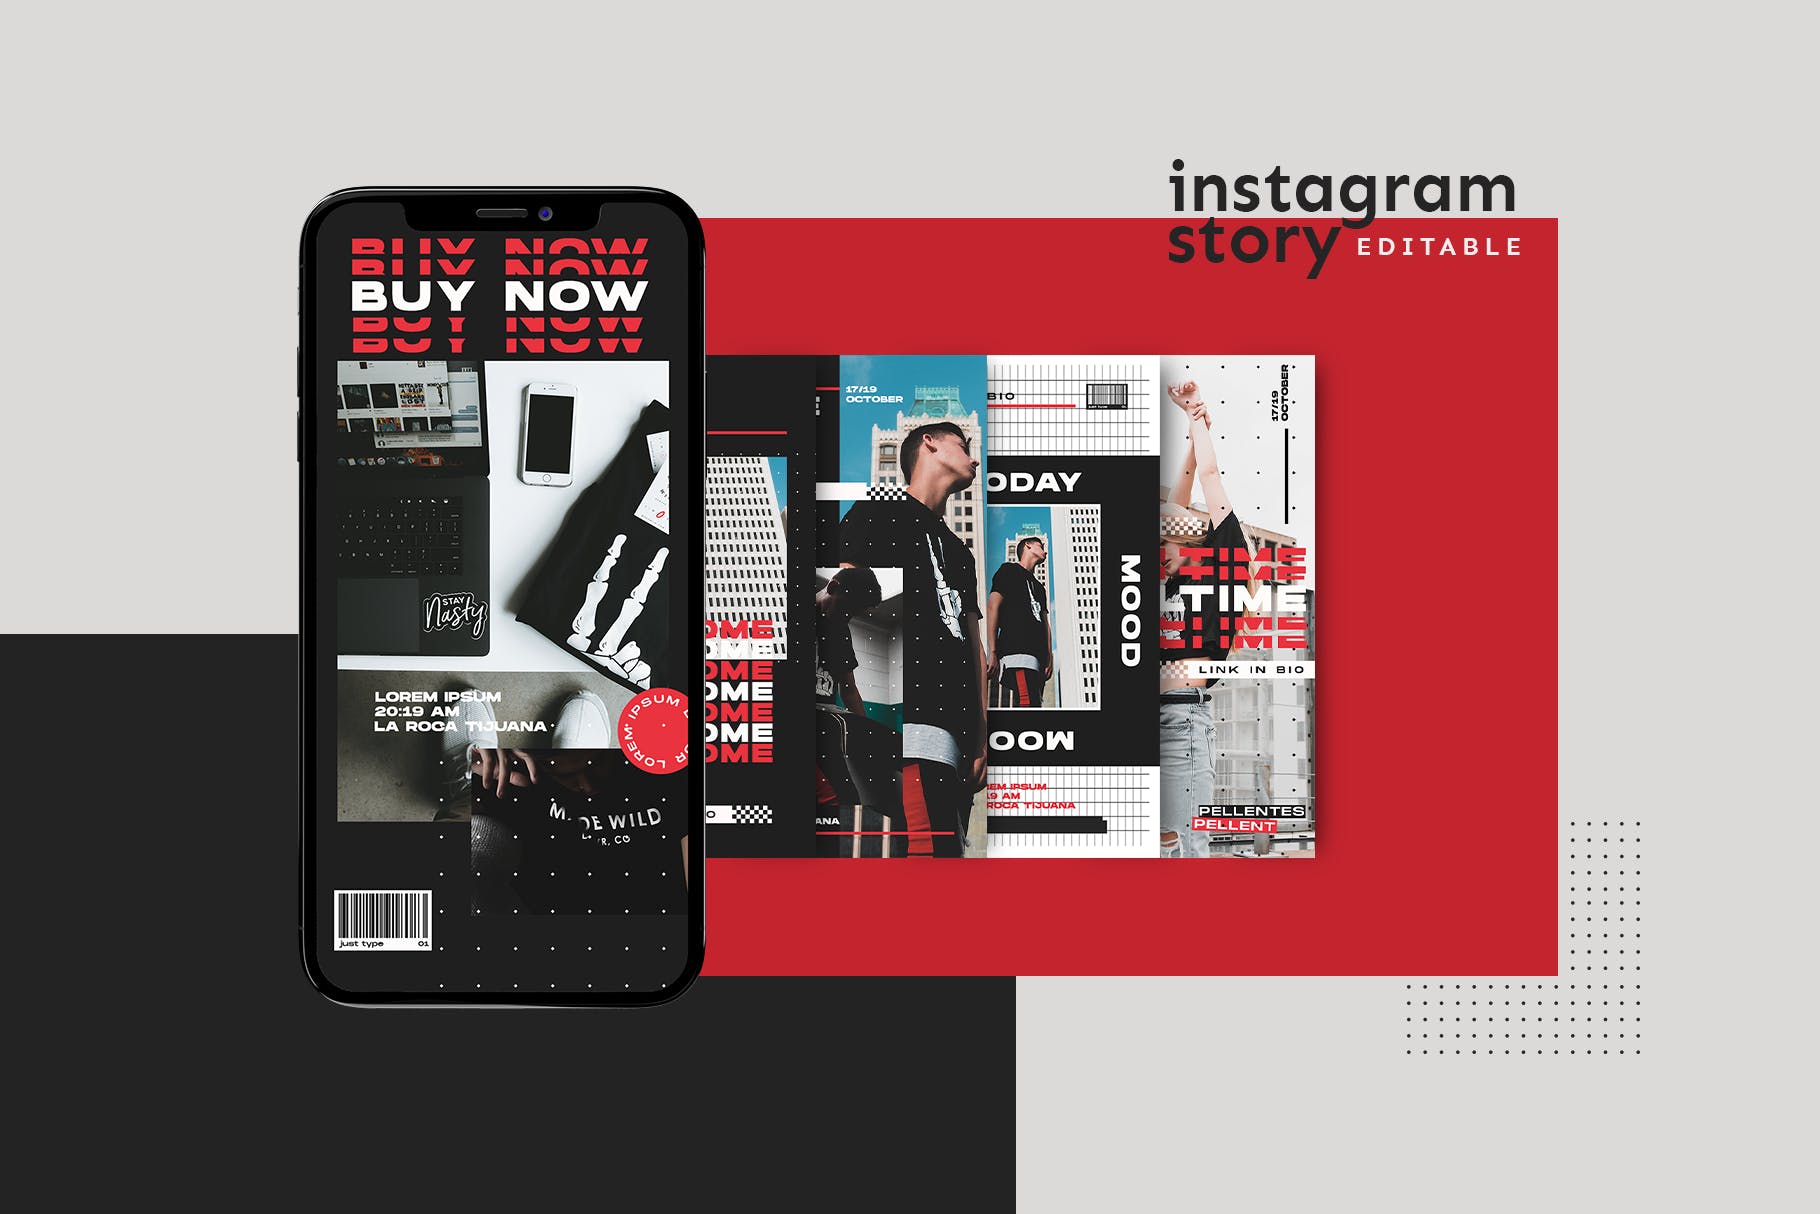 时尚潮牌Instagram社交推广贴图设计模板第一素材精选 Instagram Story Template插图(1)